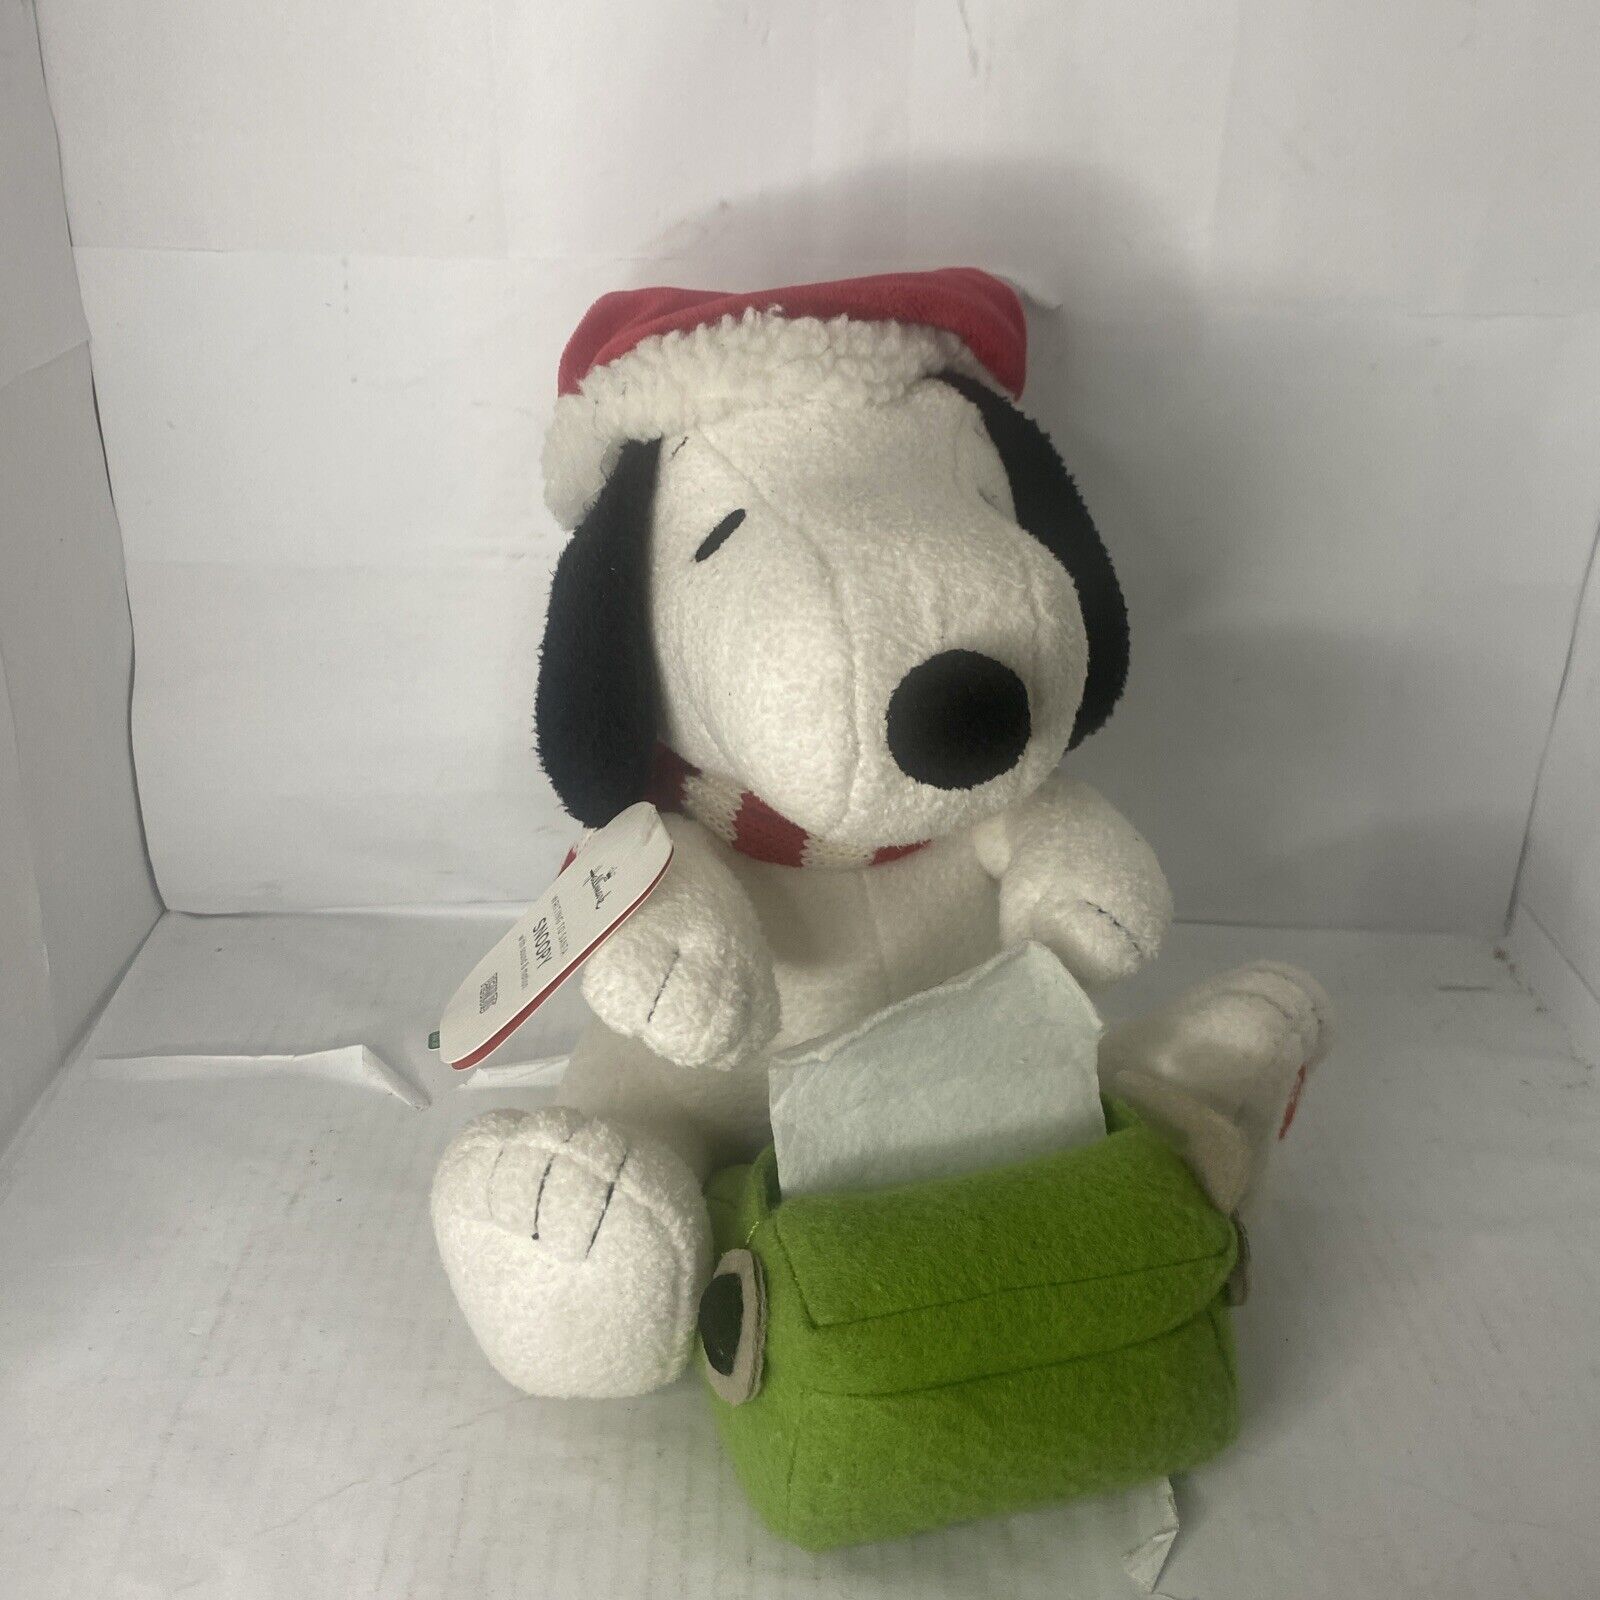 Rare Hallmark Peanuts Snoopy Plush “Writing to Santa” Sound & Motion Work W/ Tag